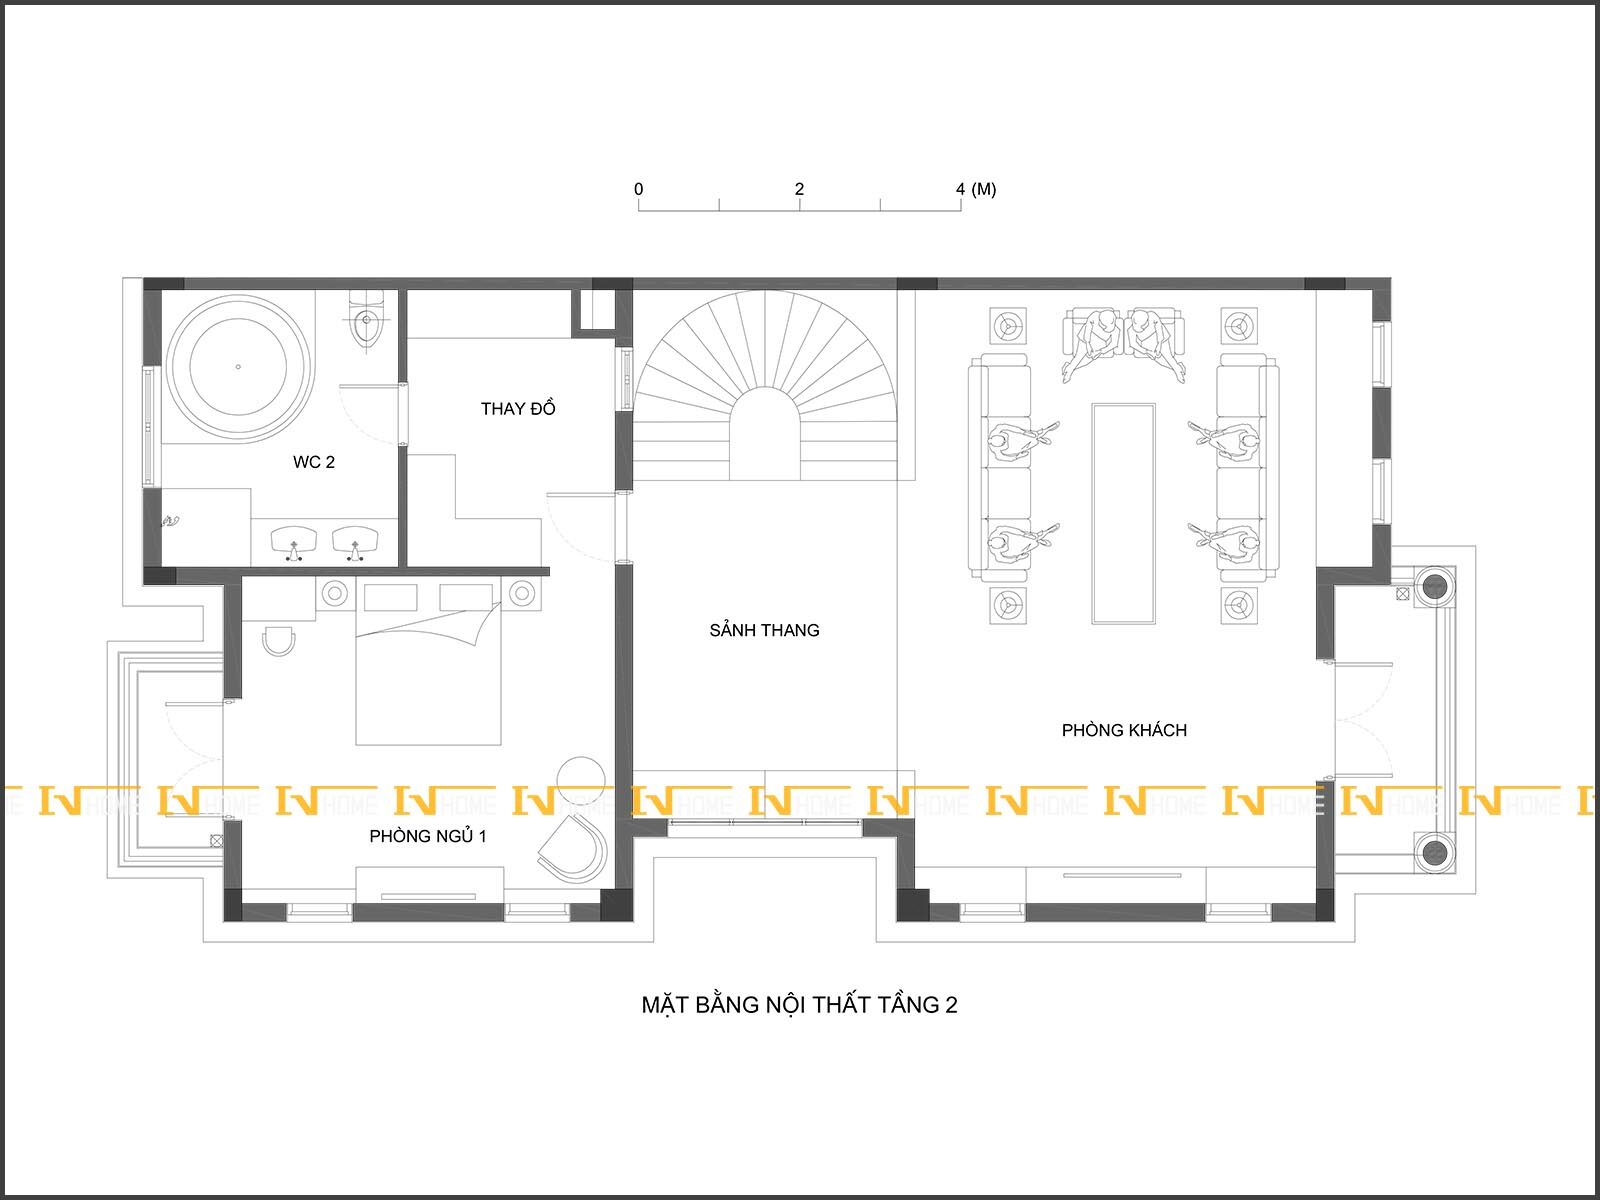 180527-1, Mặt bằng phòng khách, phòng ngủ 1 tầng 2.